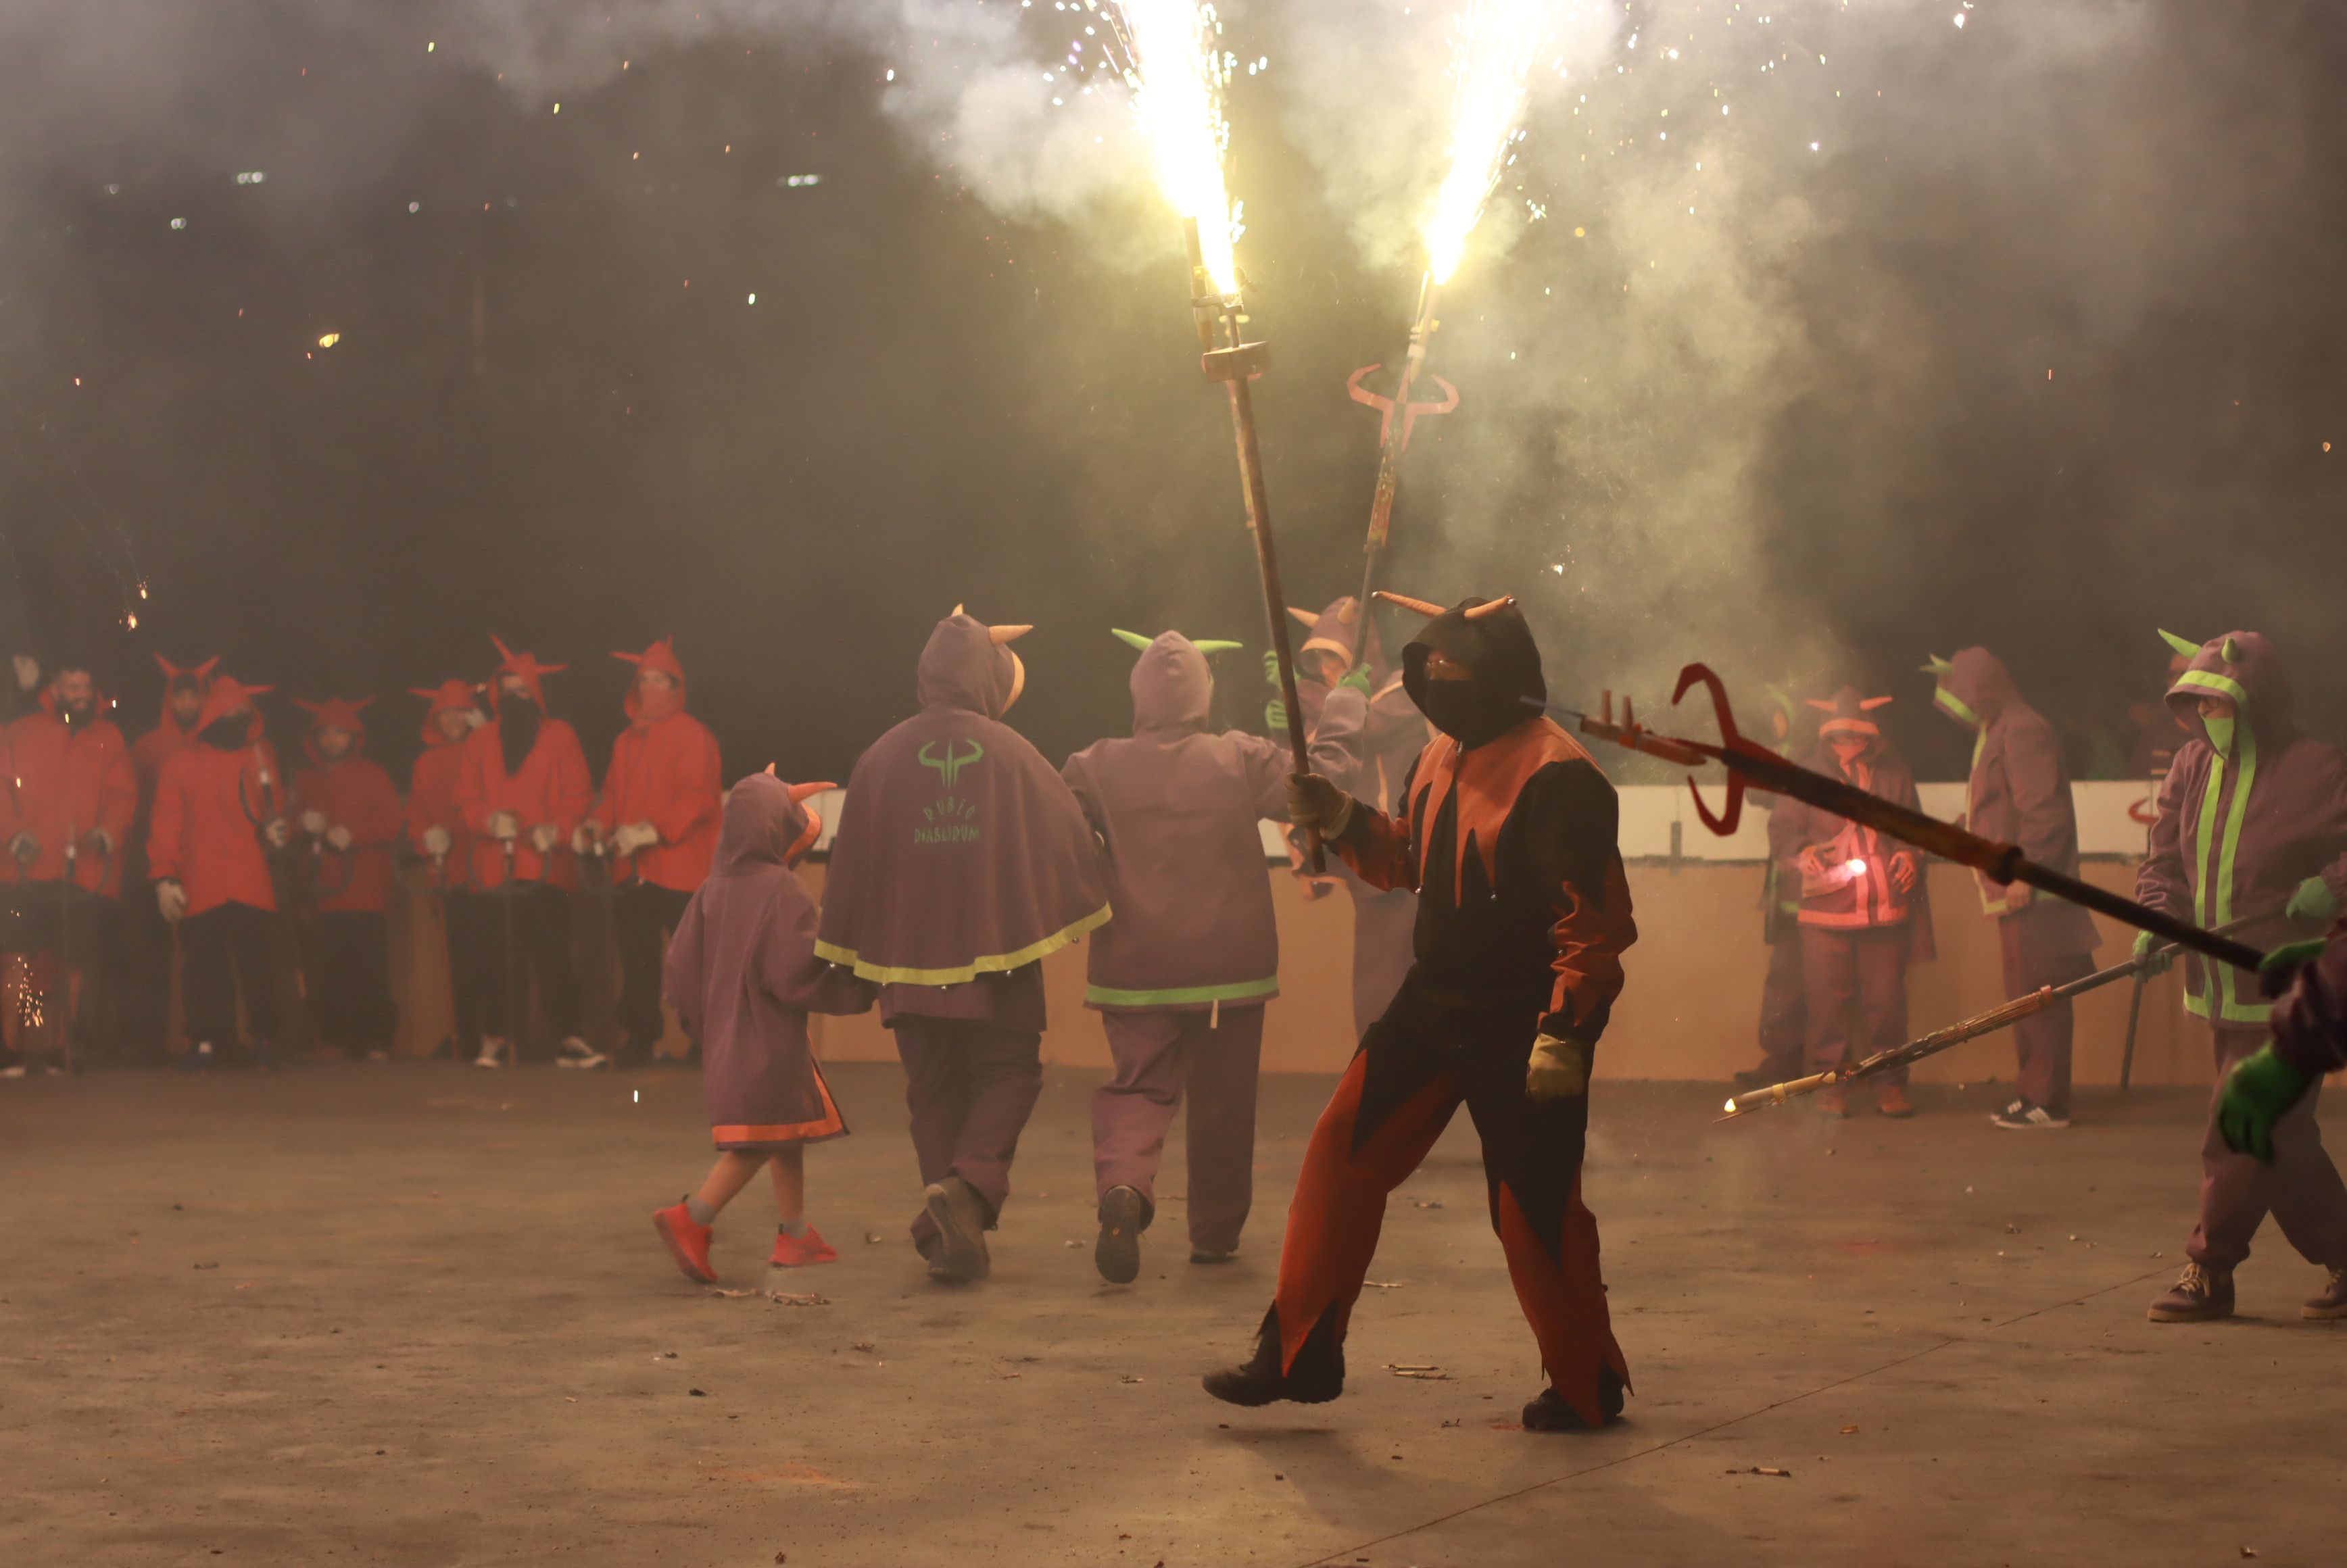 Raval de foc amb la la Colla de Diables de la Riera, la Colla de Diables Rubeo Diablorum i la Colla de Diables de Rubí. FOTO: Josep Llamas